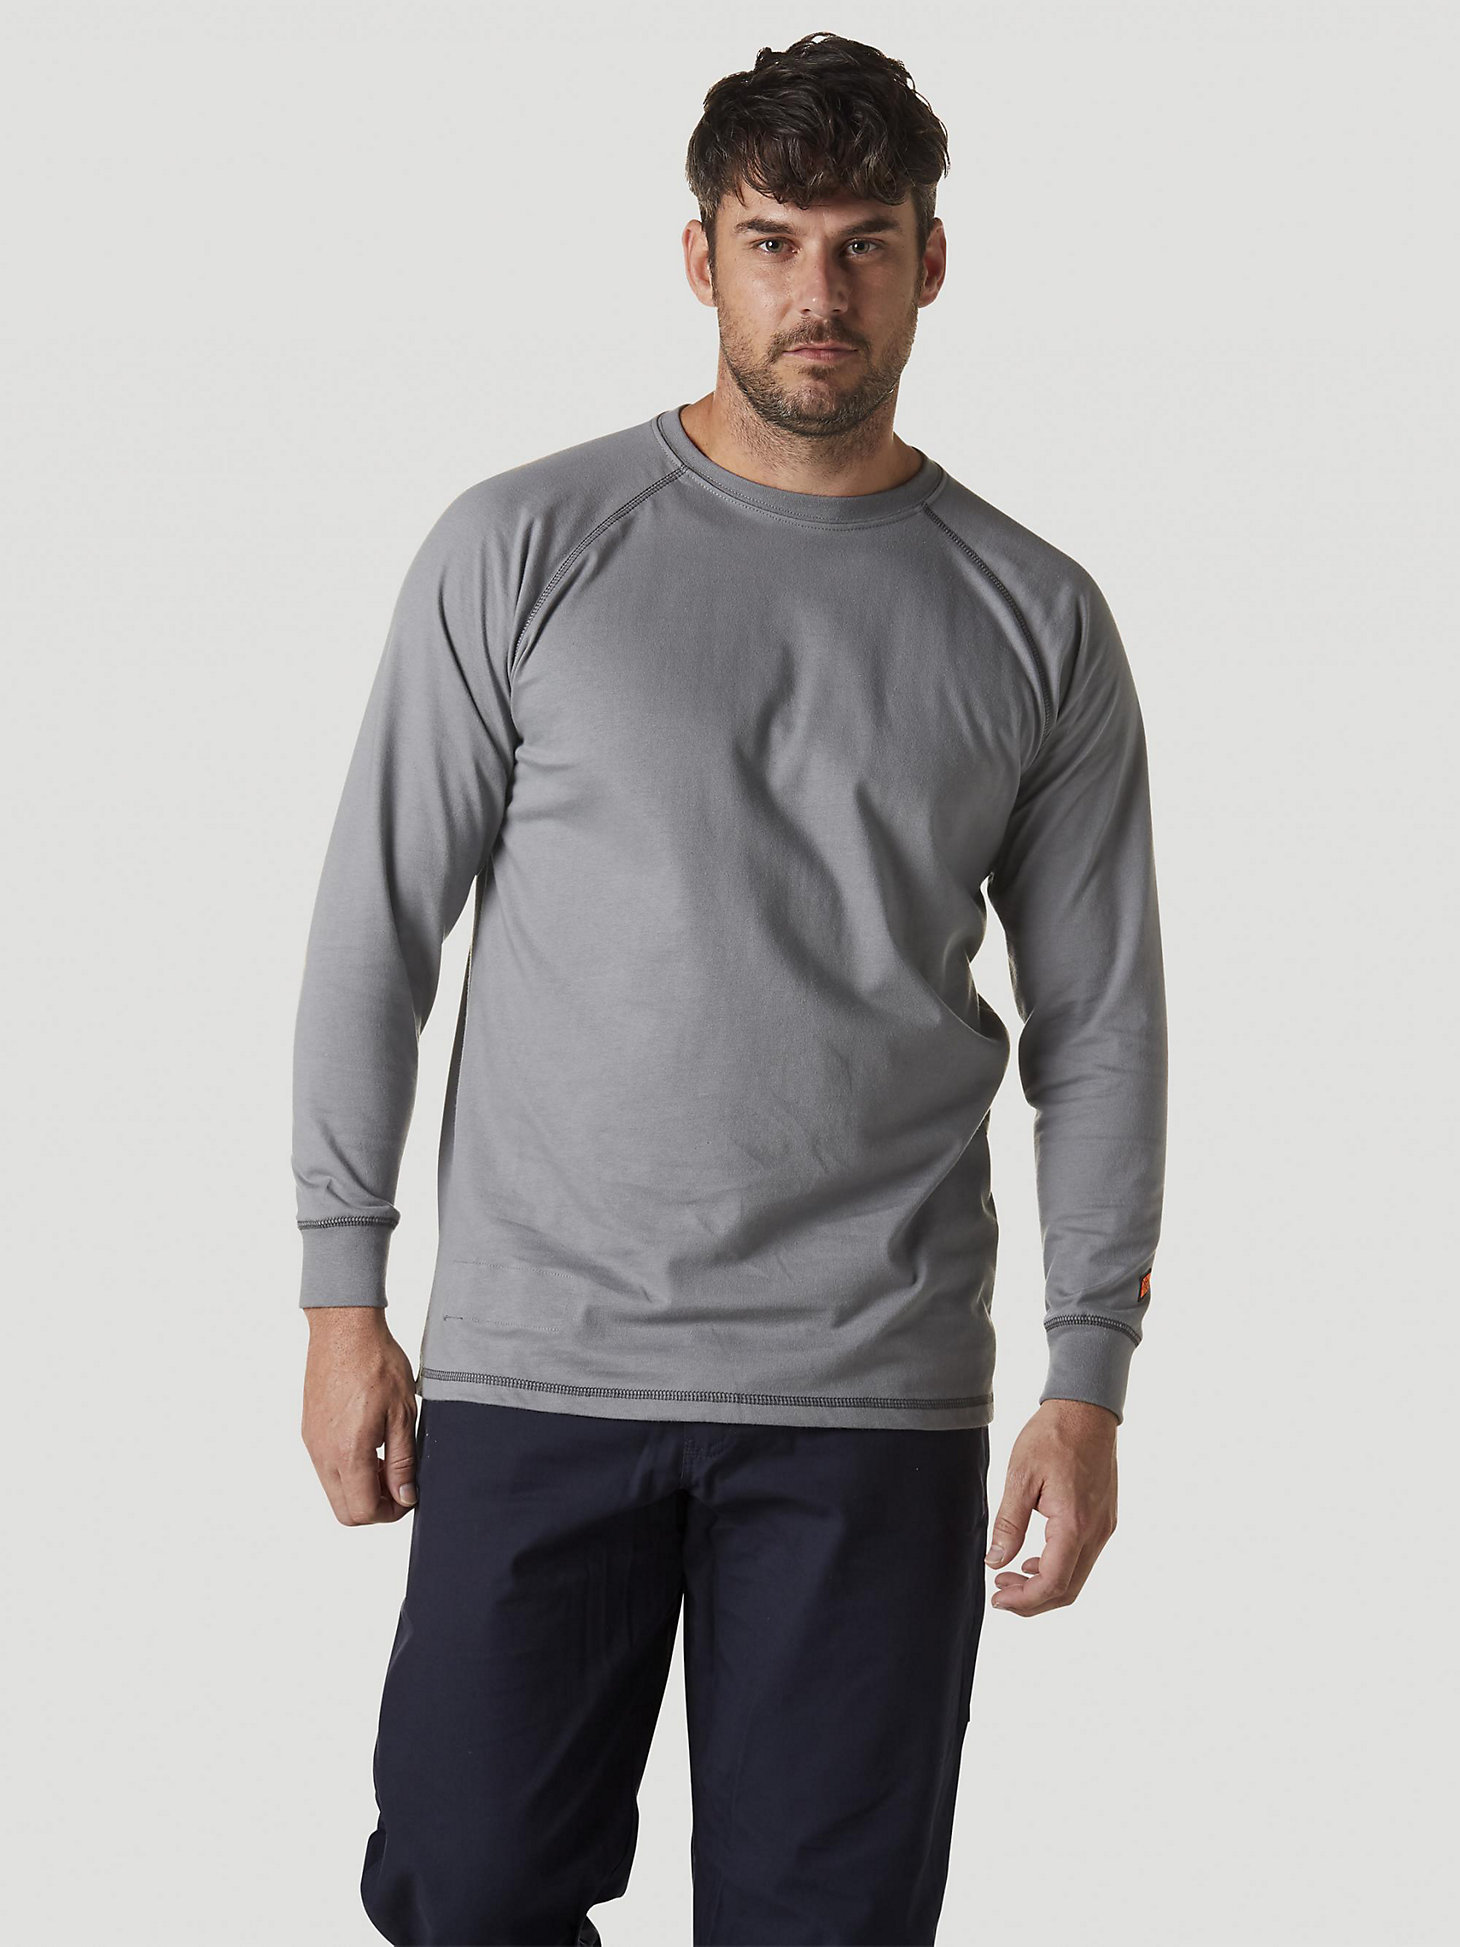 Stratford on Avon Beak scandal Wrangler® FR Flame Resistant Long Sleeve Base Layer T-Shirt